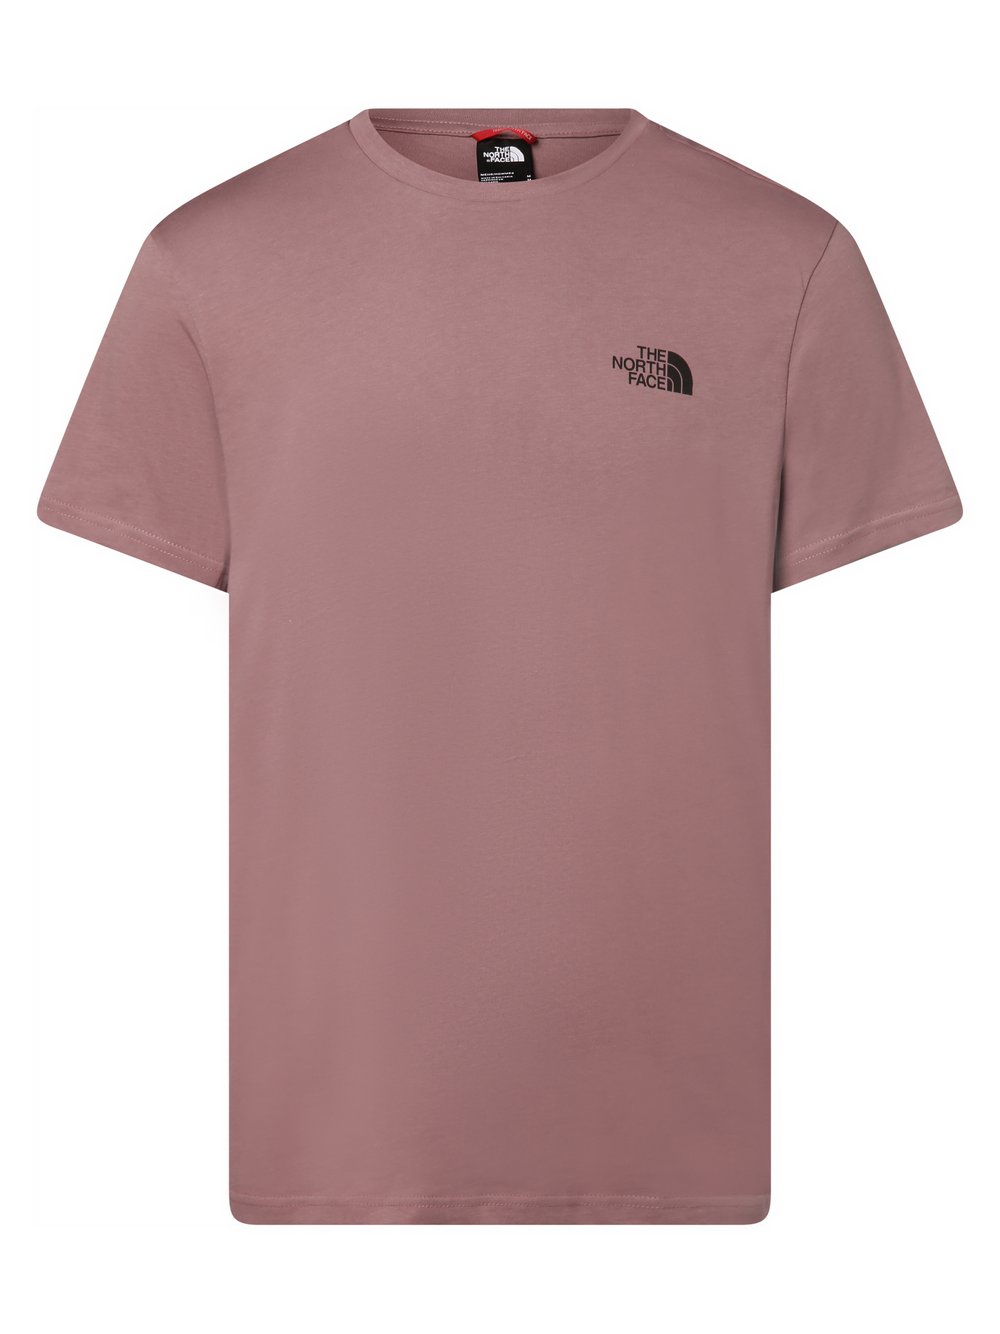 The North Face - T-shirt męski, różowy